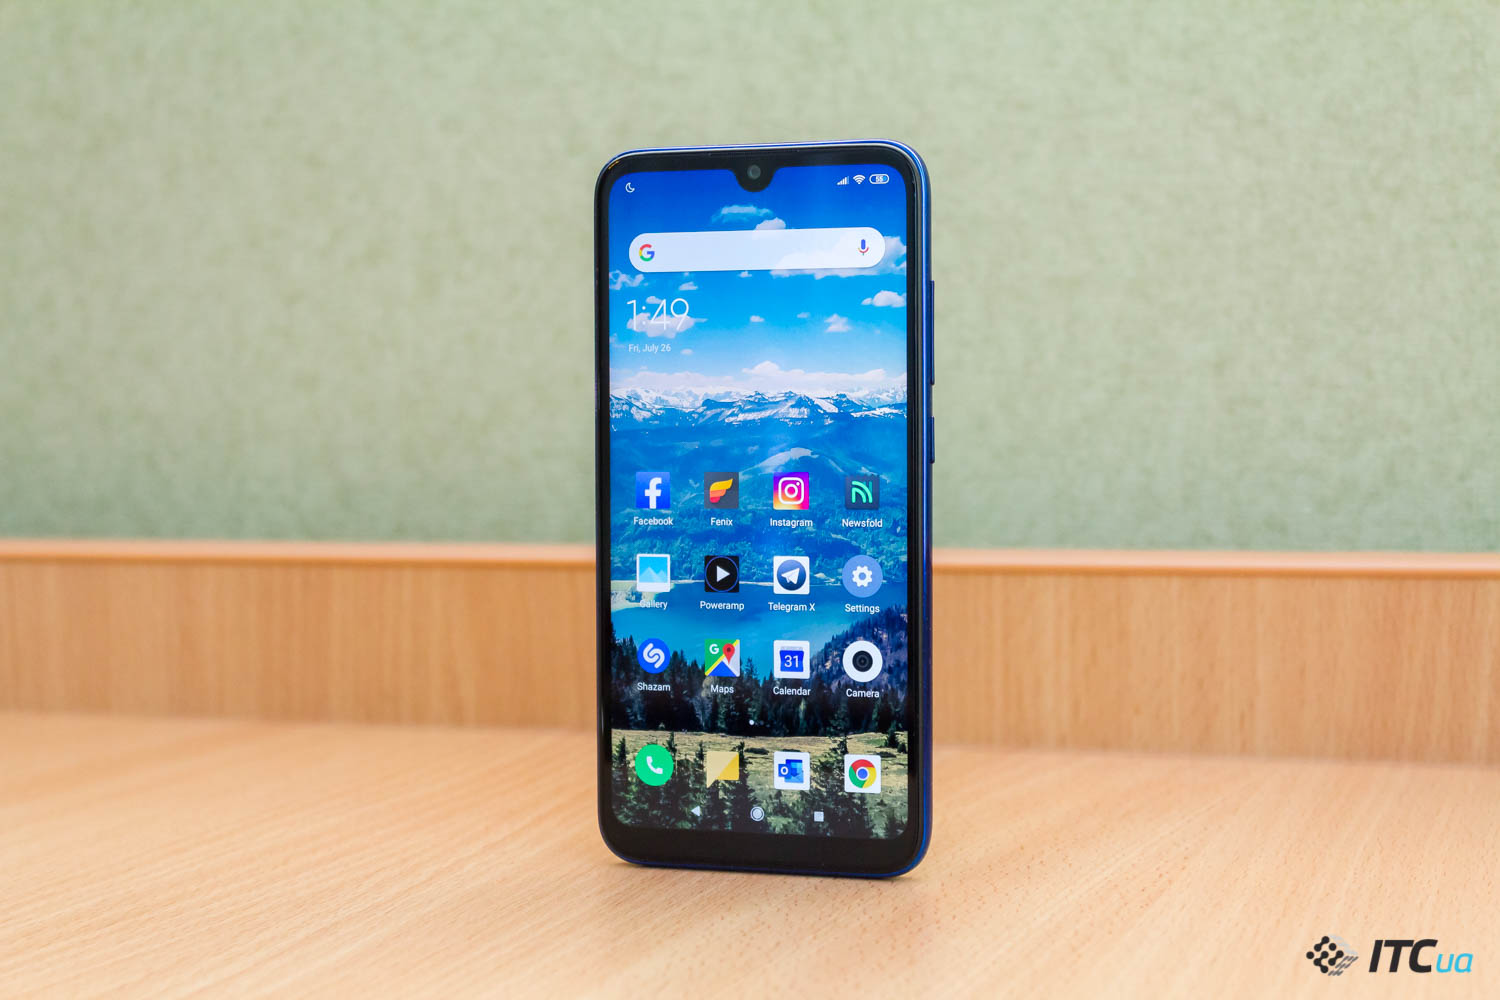 Недорогие смартфоны с Android 9 и 4 ГБ оперативной памяти. Есть из чего выбрать?